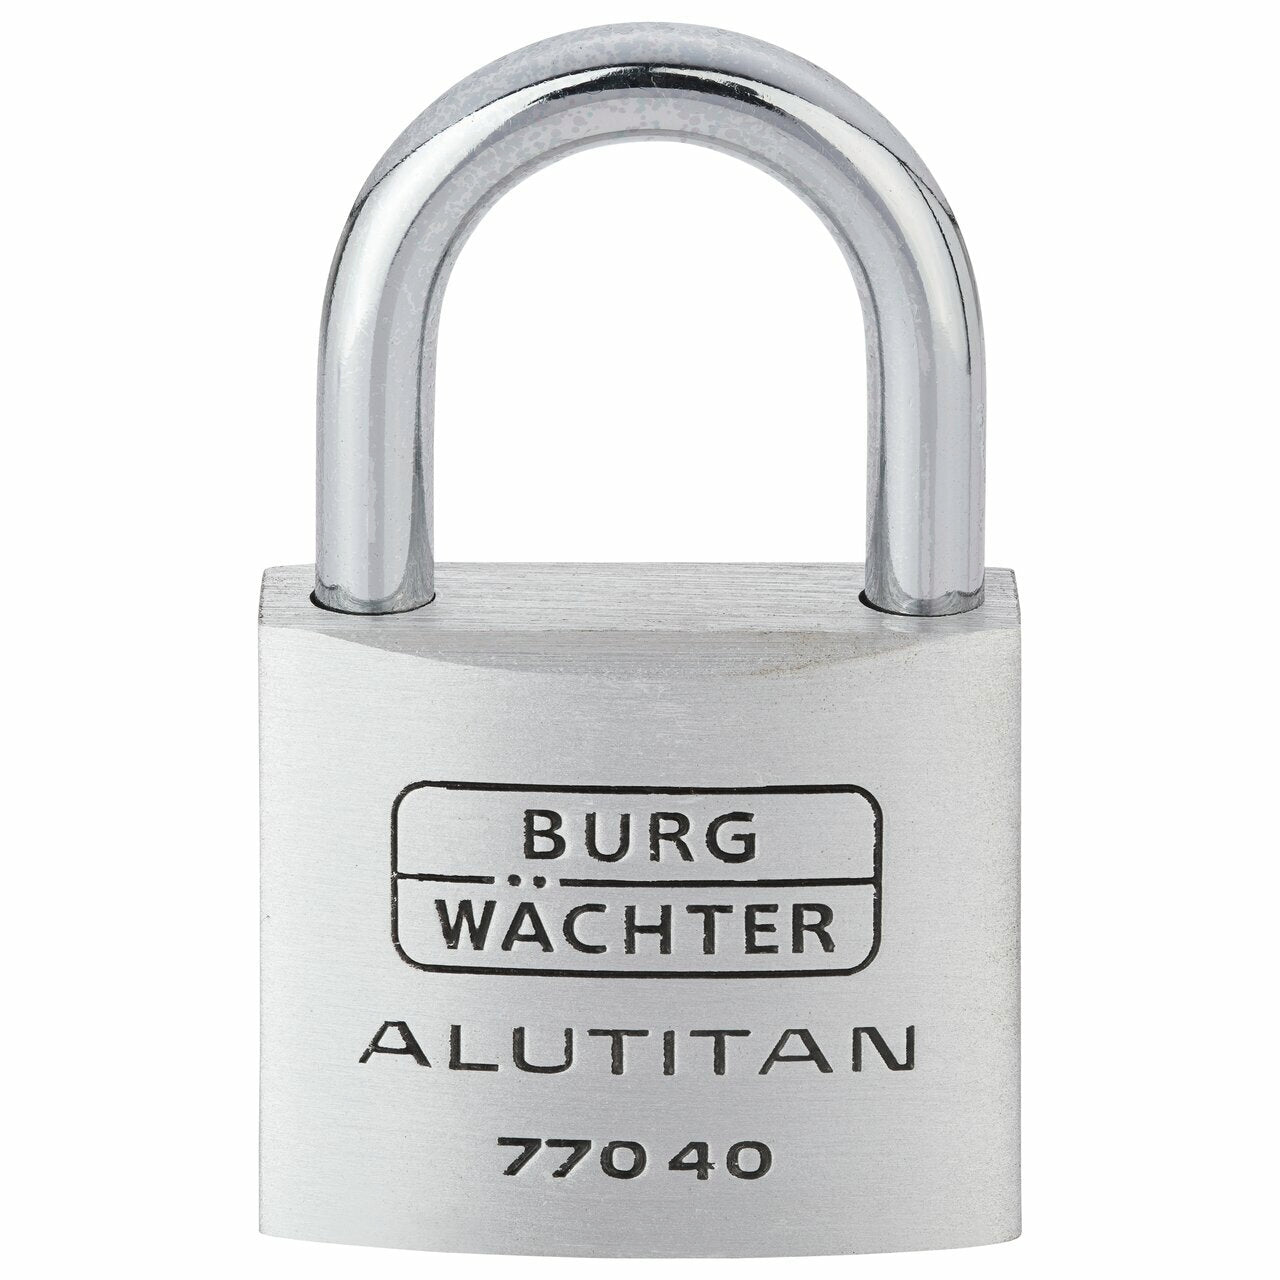 Leicht & sicher: Alutitan Zylinder-Vorhängeschloss von BURG-WÄCHTER